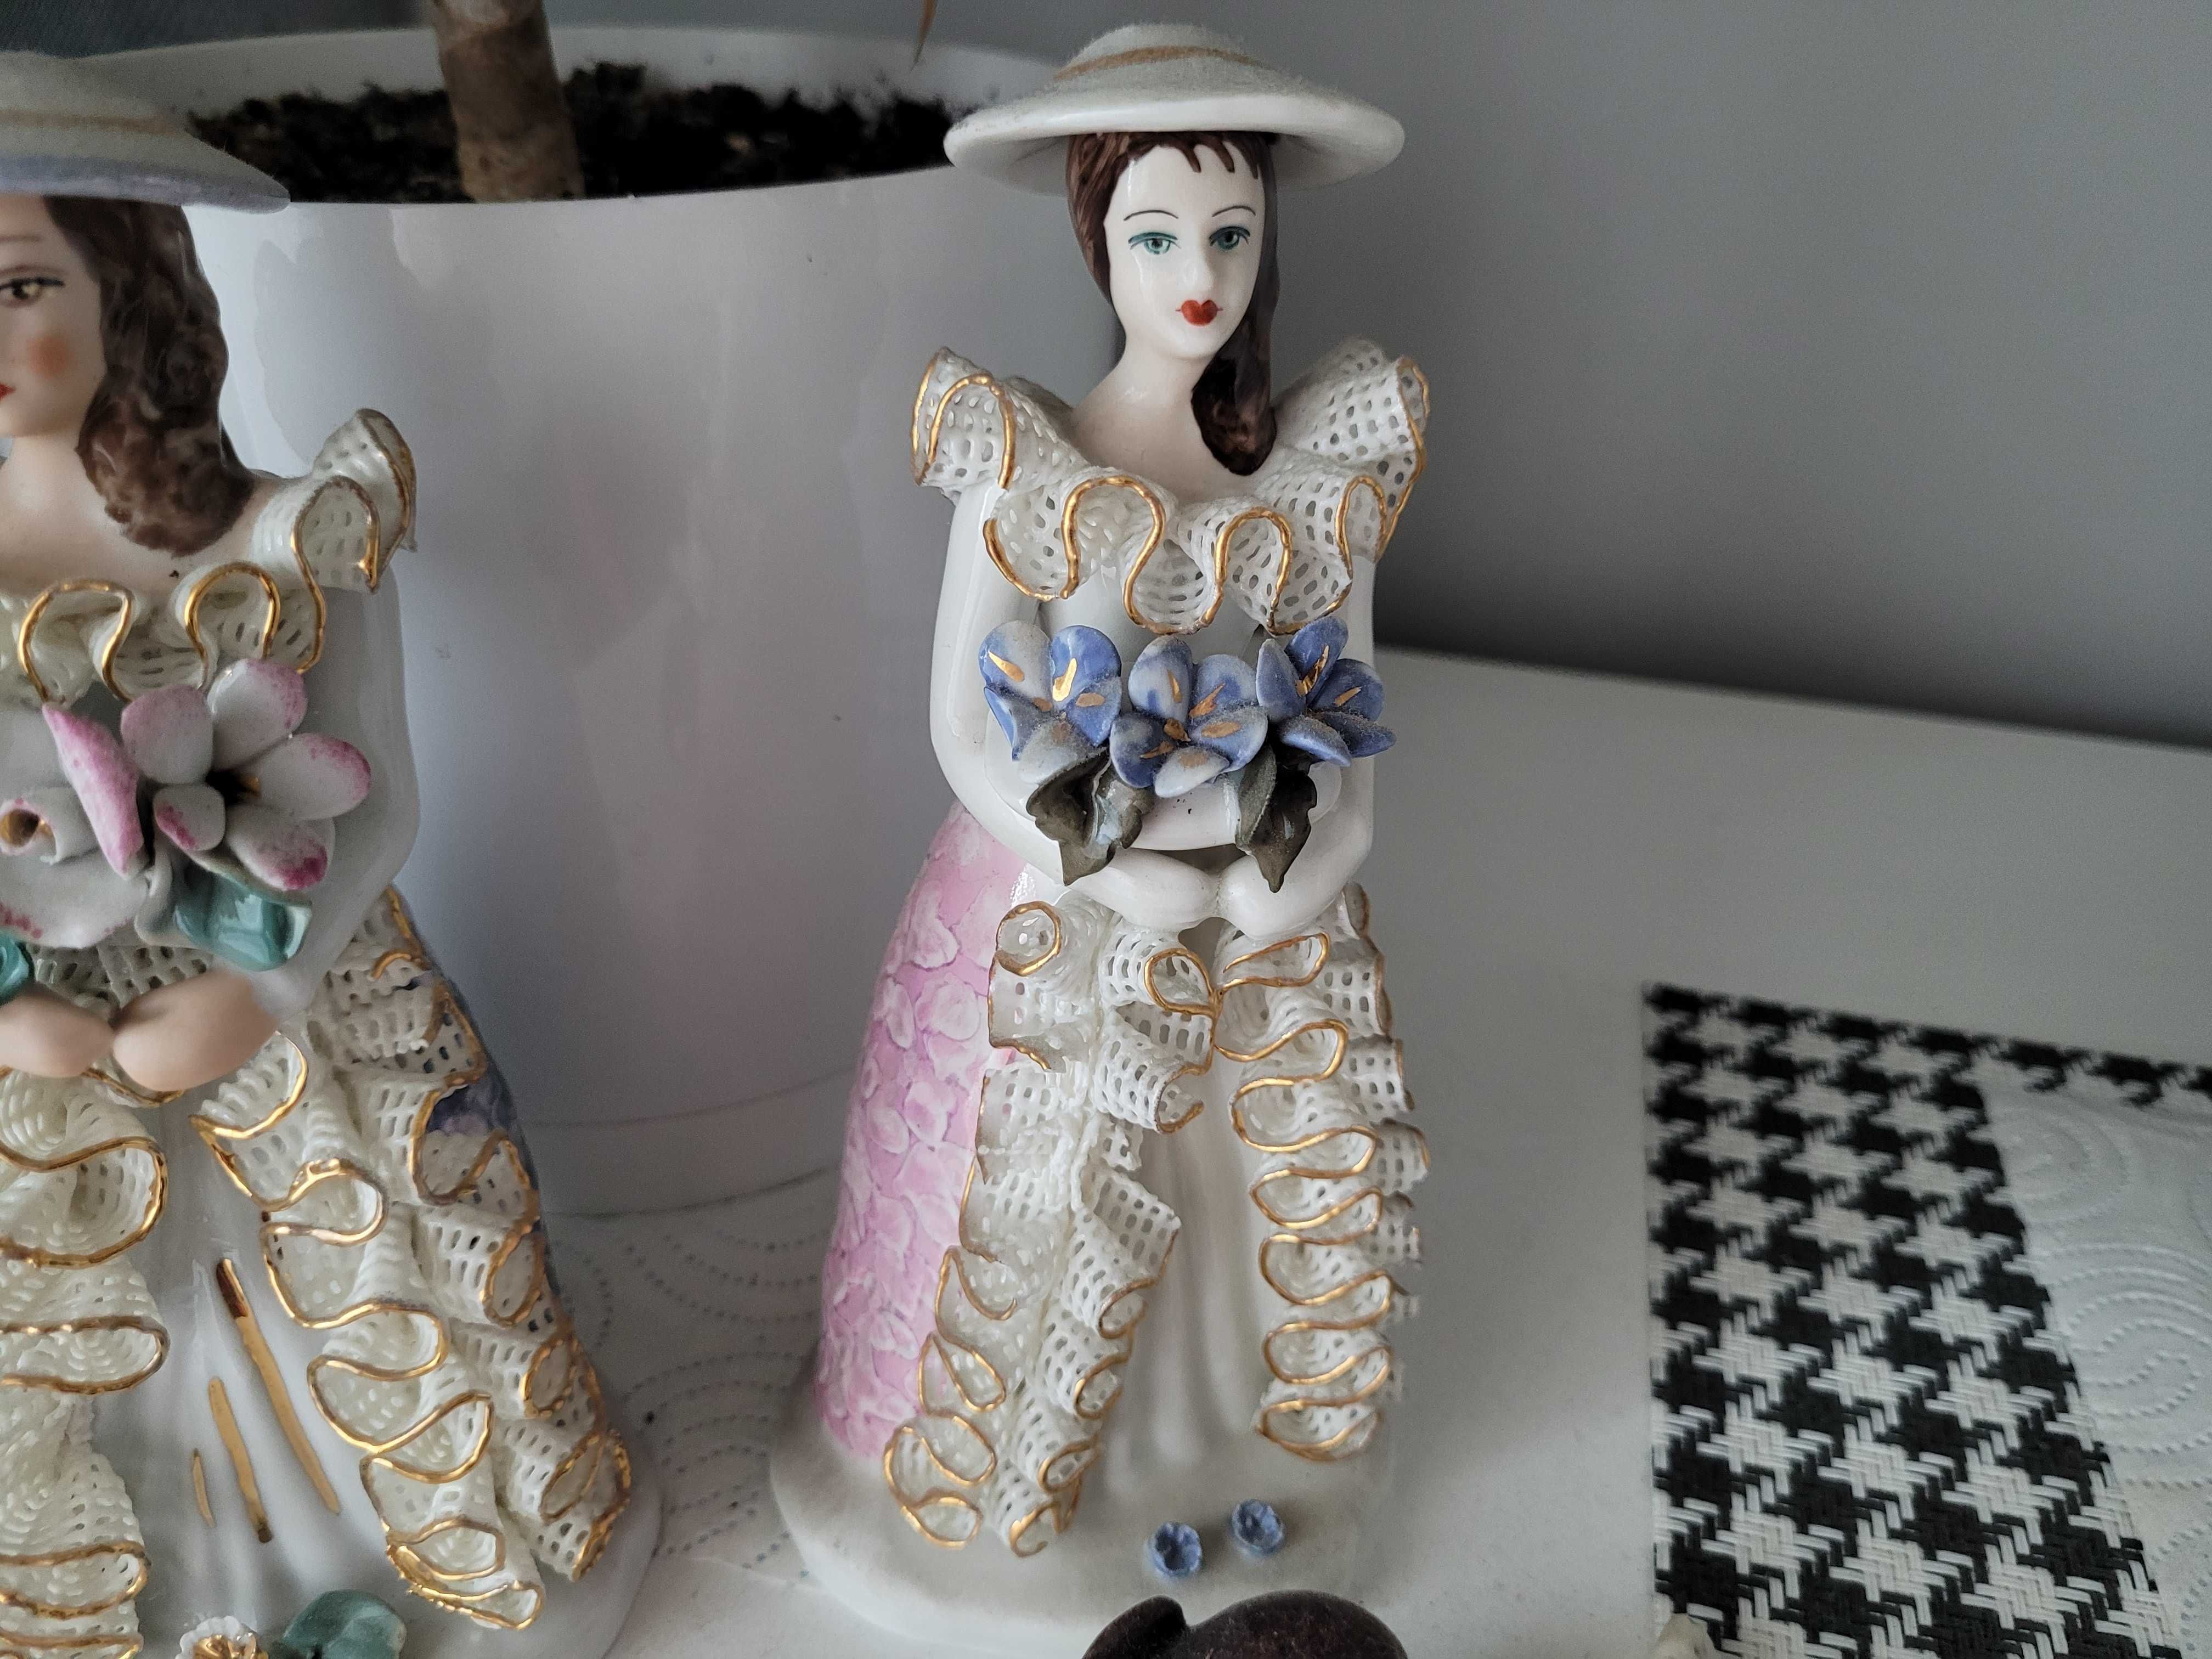 Figurki - lalki porcelanowe